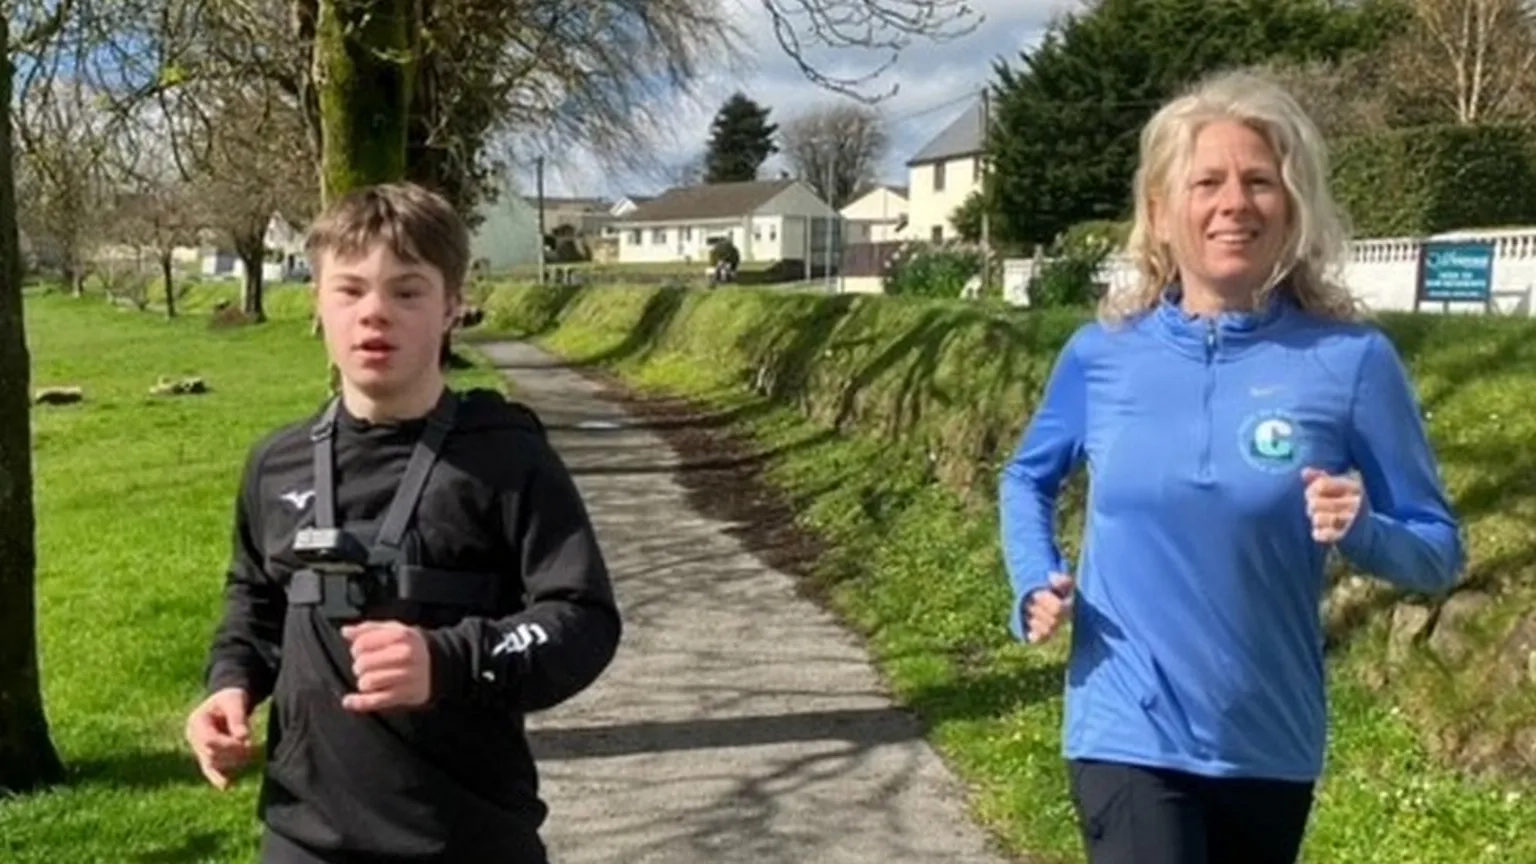 Il 19enne di Cardiff il prossimo 21 aprile parteciperà alla corsa con la mamma: “Mi piace correre con lei, è una leggenda” dice alla BBC. Il Guinnes World Record ha già pronto una titolo col suo nome